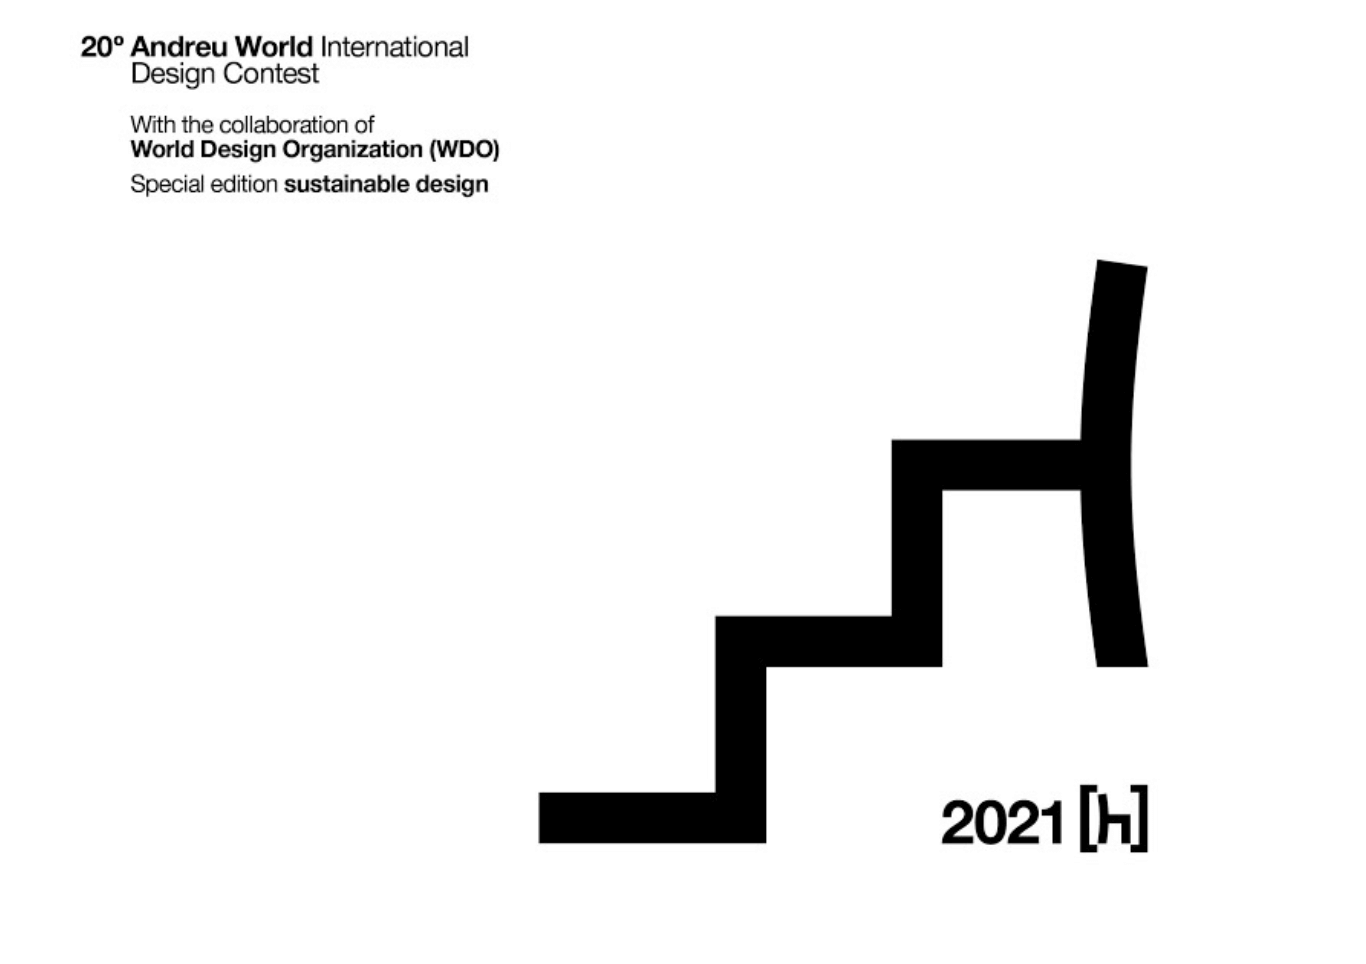 20E ANDREU WORLD INTERNATIONAL DESIGN CONTEST - 